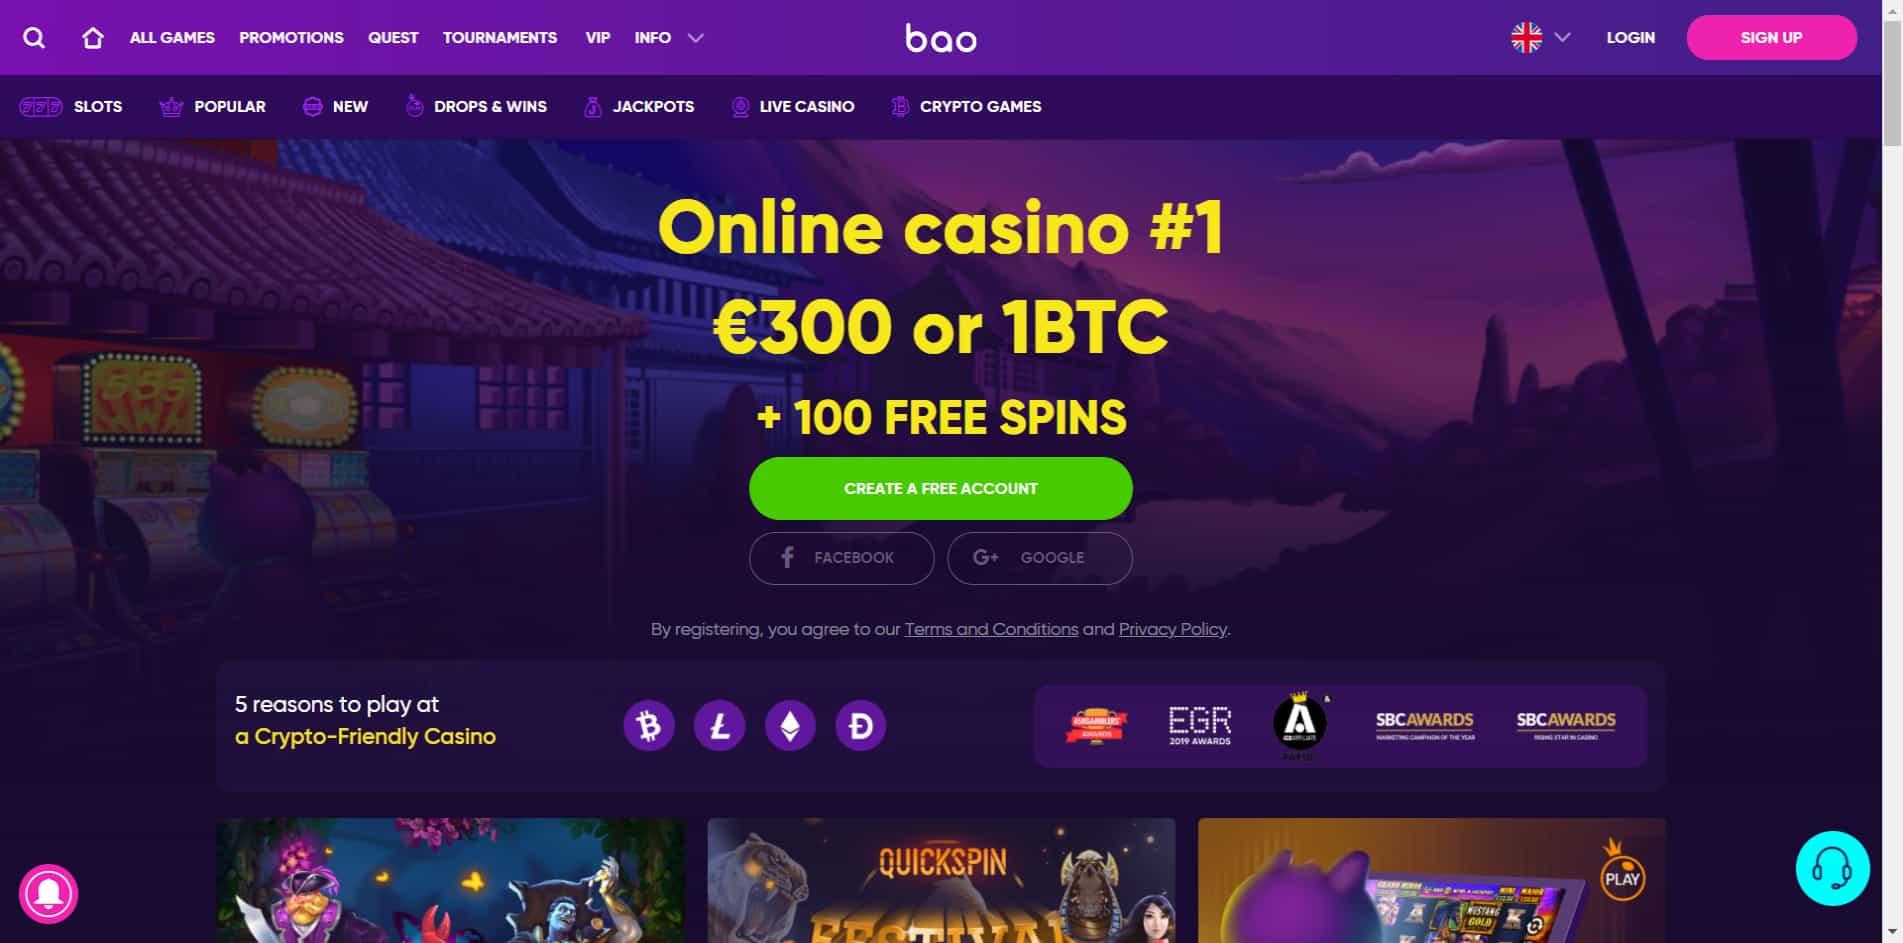 Bao casino homepage